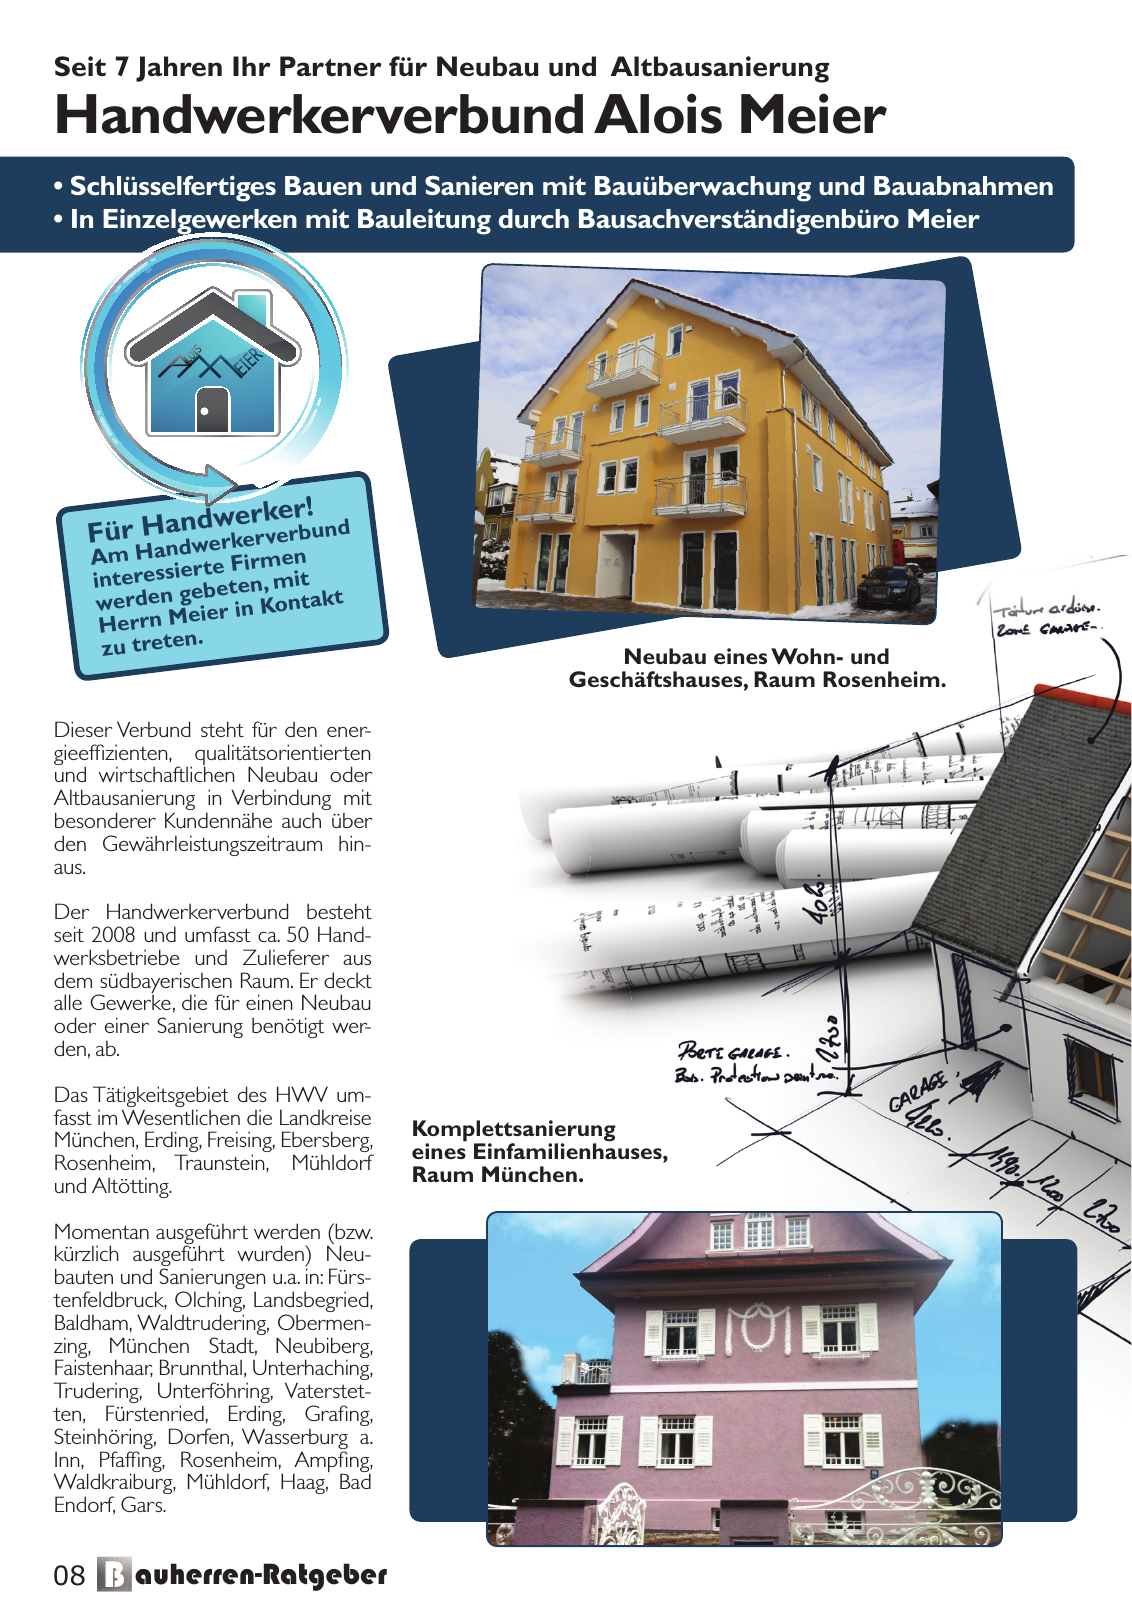 Vorschau Bauherren-Ratgeber 2015 2016 Seite 8